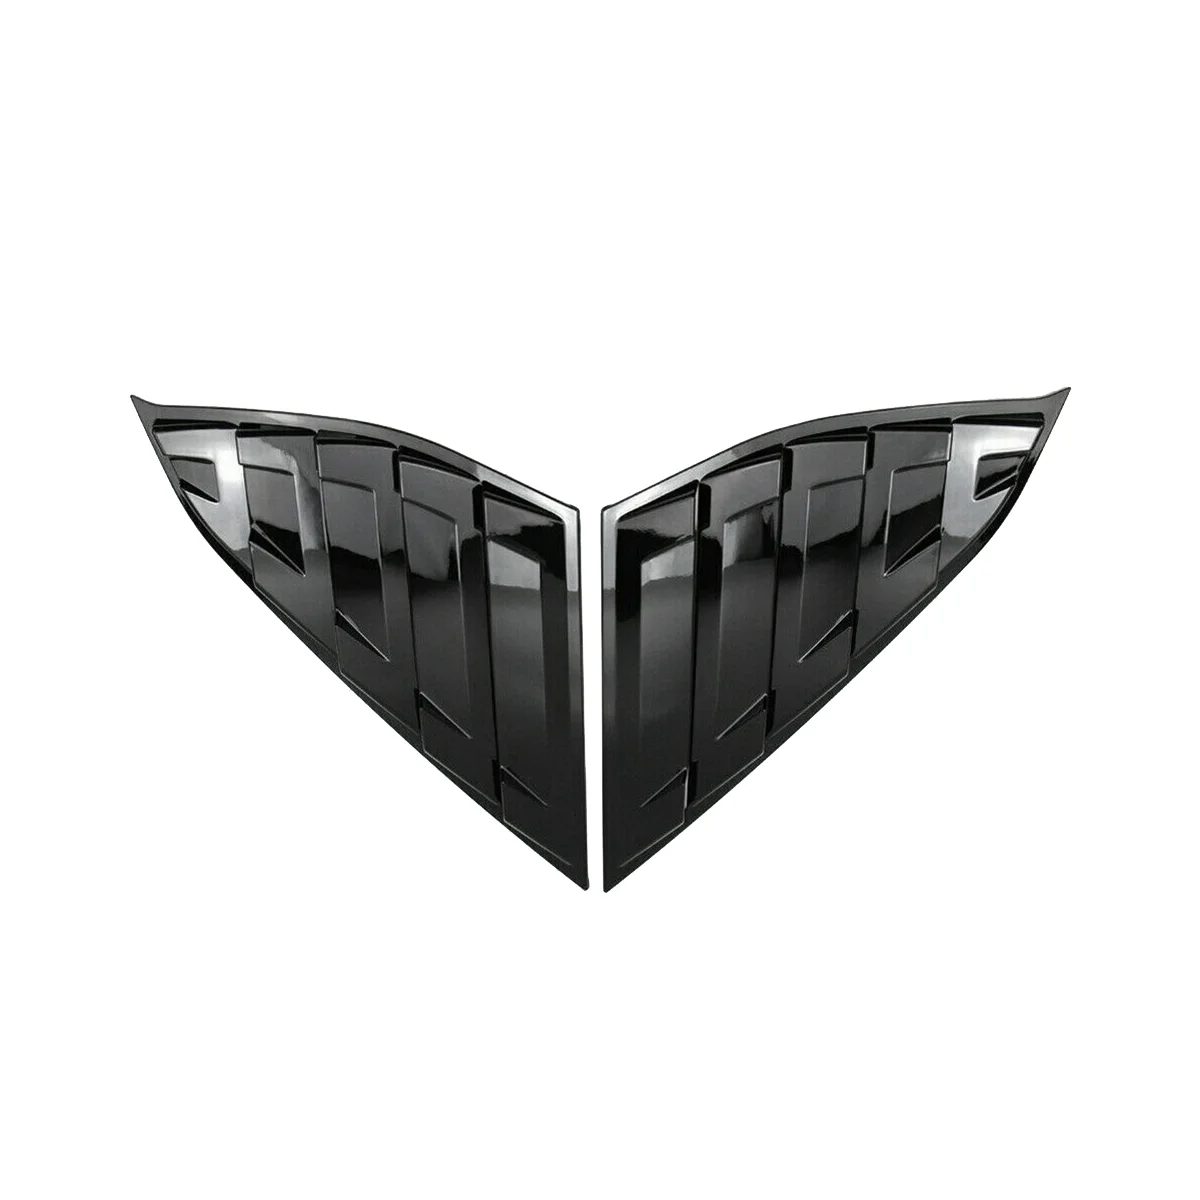 

Автомобильная задняя боковая решетка вентиляционного отверстия, крышка оконного жалюзи для 2018-2022 Honda Accord глянцевая черная